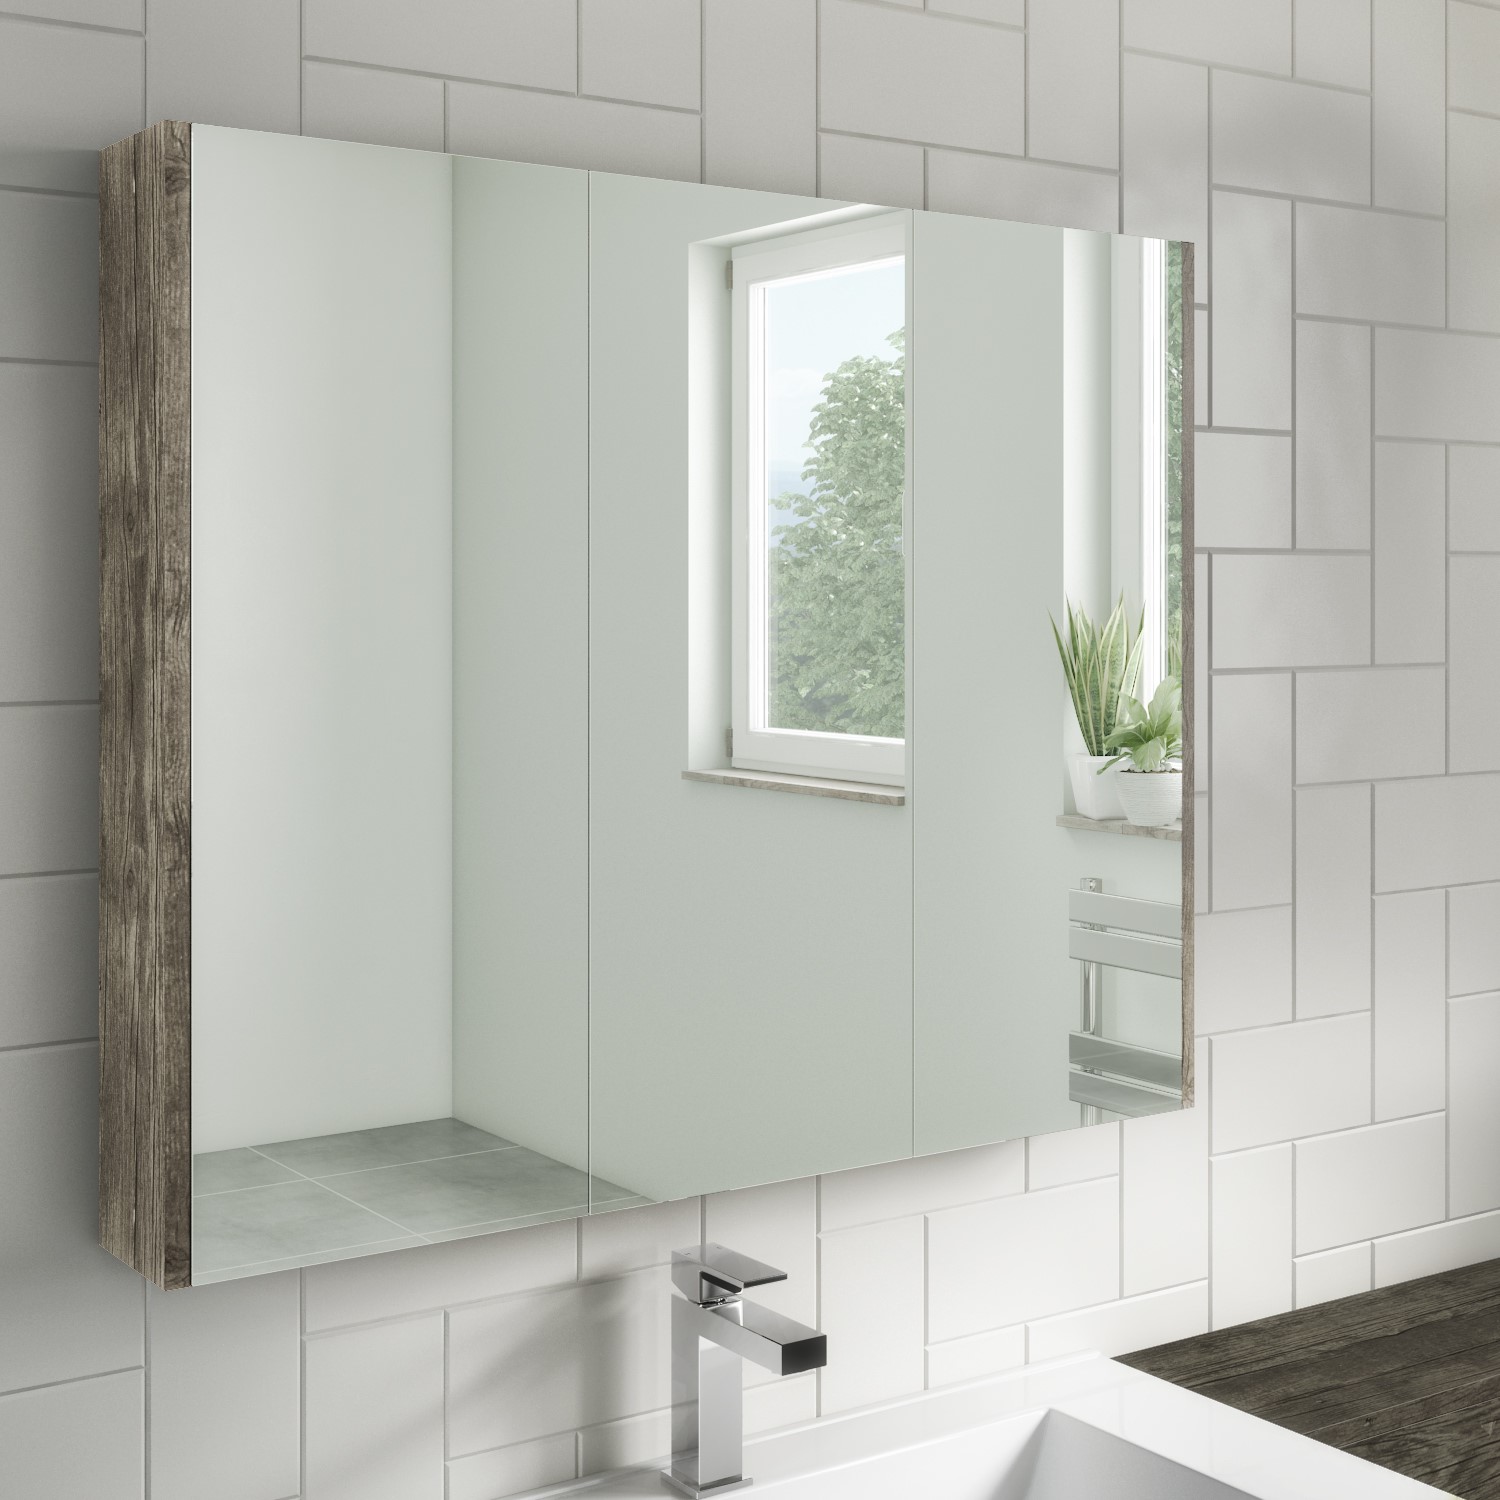 Wood Effect Mirrored Wall Bathroom Cabinet 800 x 650mm - Ashford